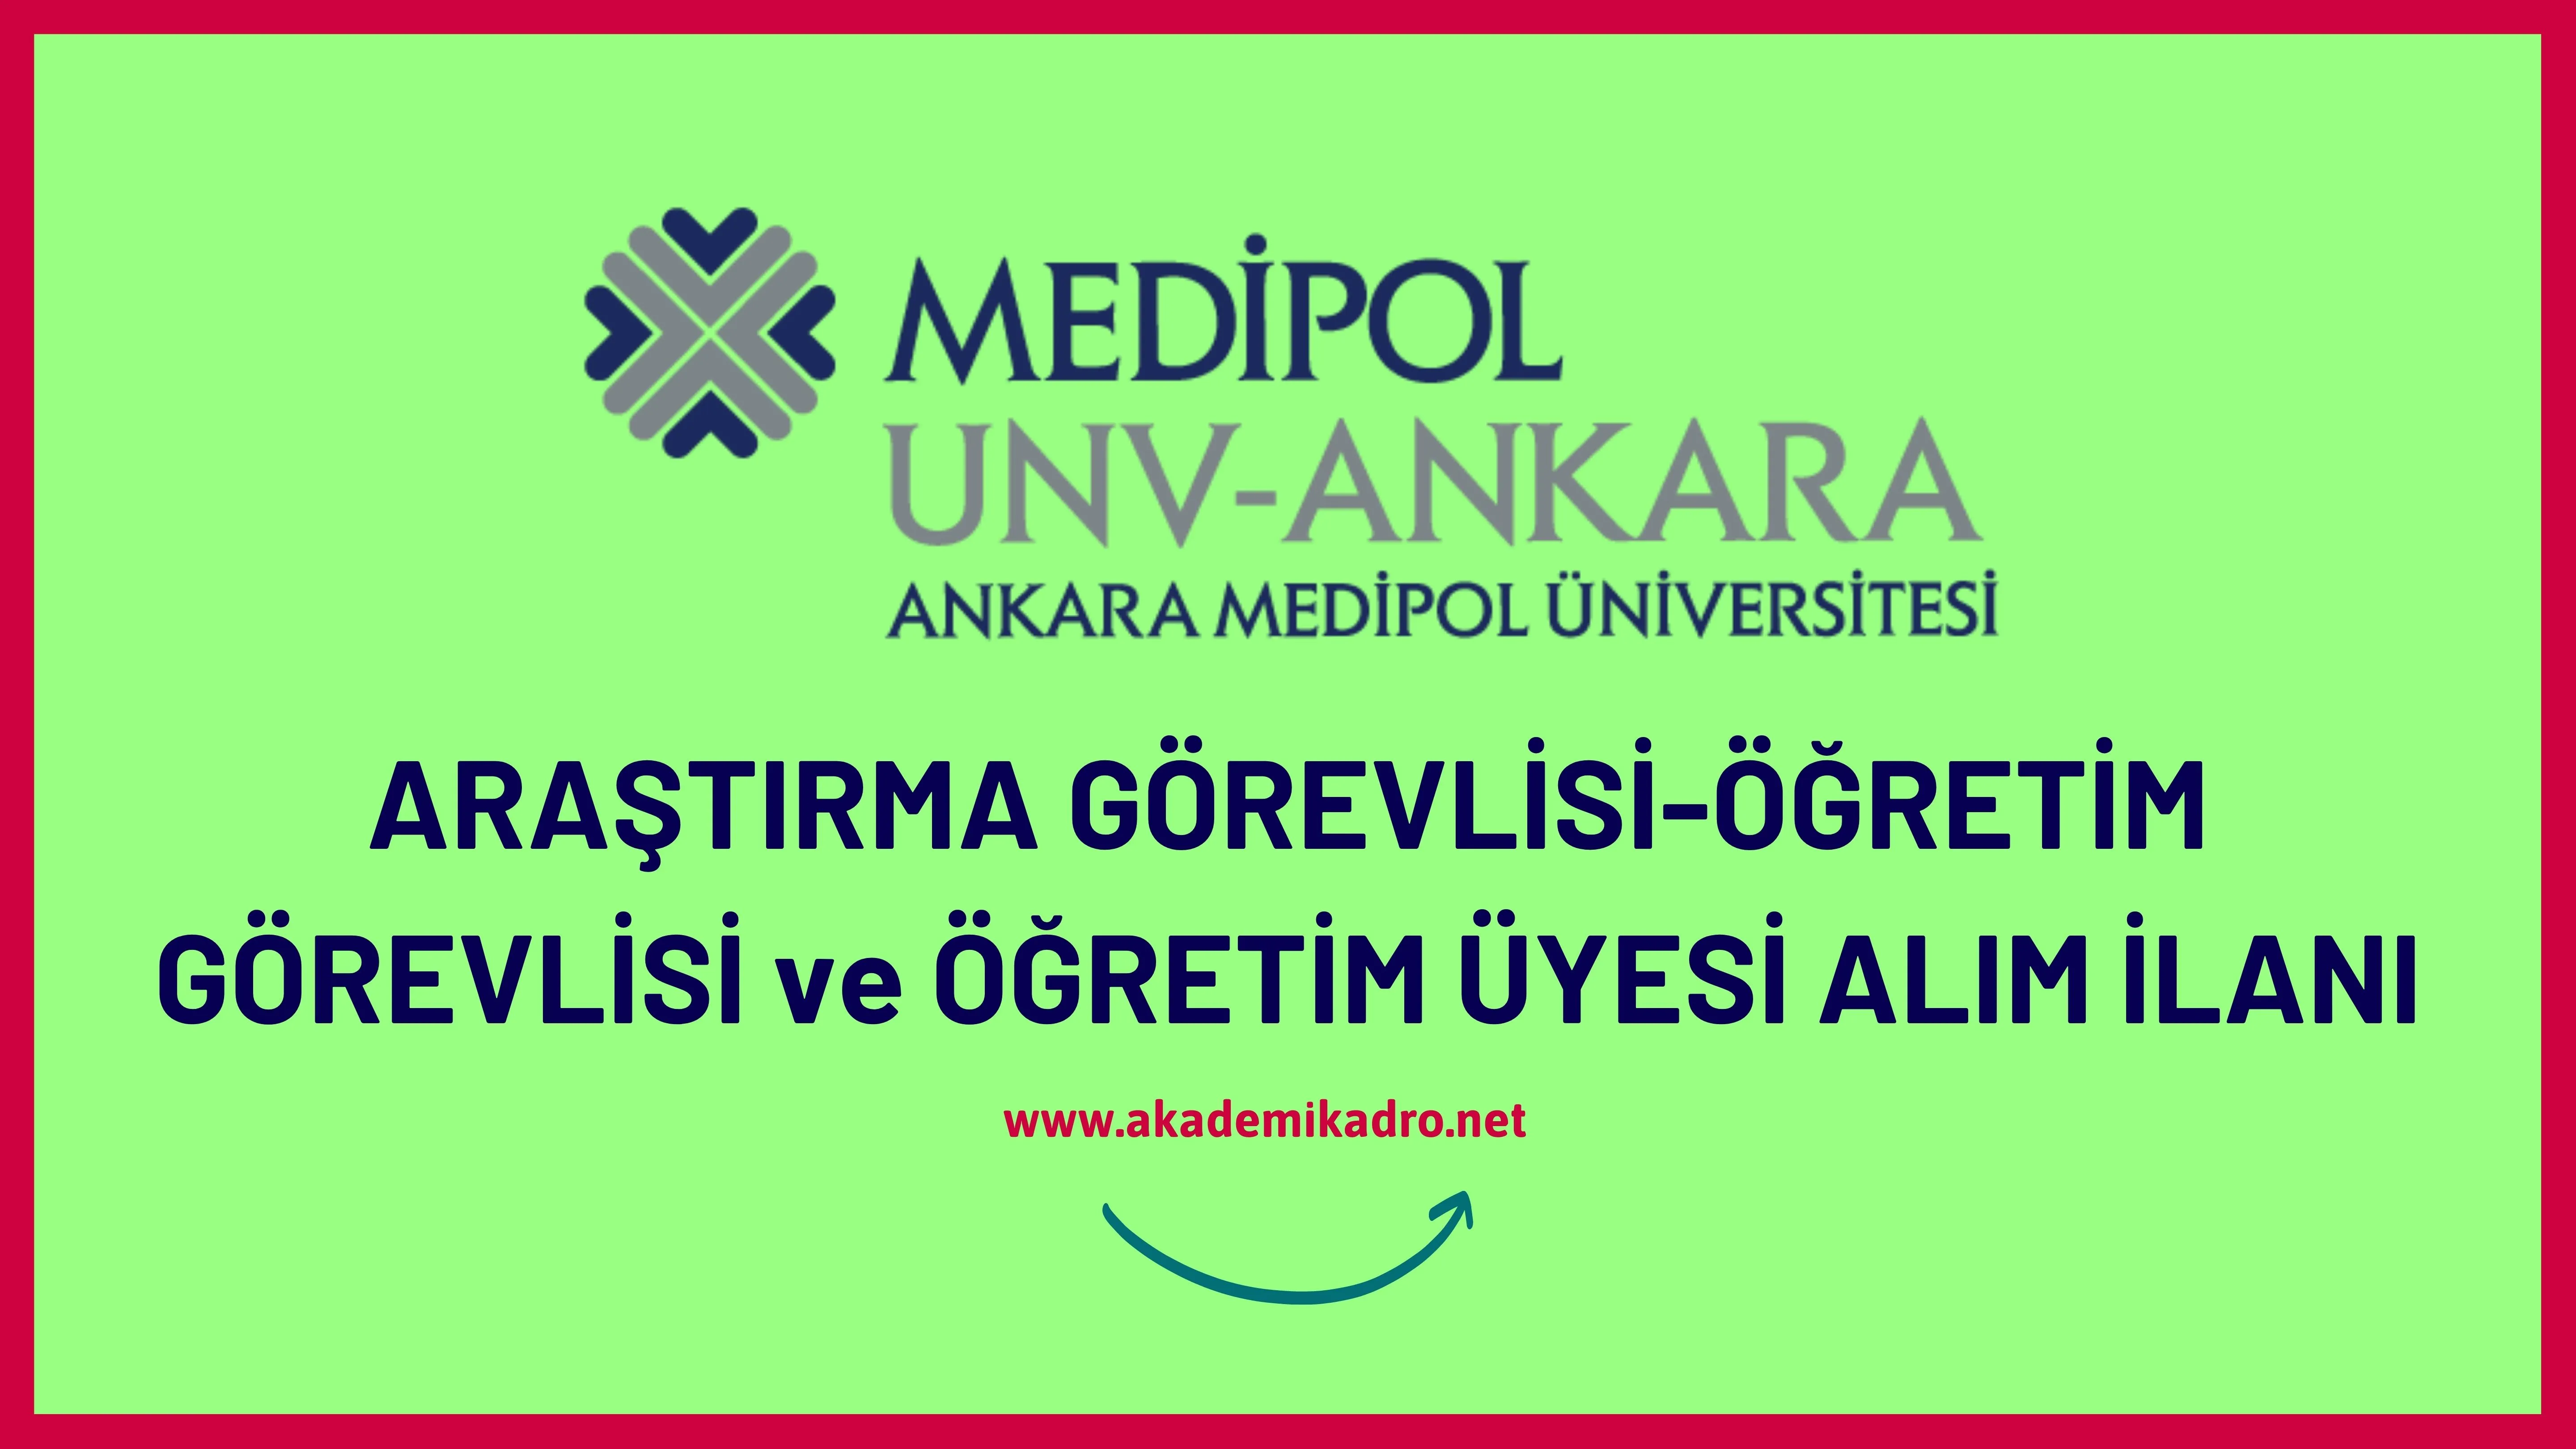 Ankara Medipol Üniversitesi 7 Araştırma görevlisi, 5 Öğretim görevlisi ve birçok alandan 47 Öğretim üyesi alacak.